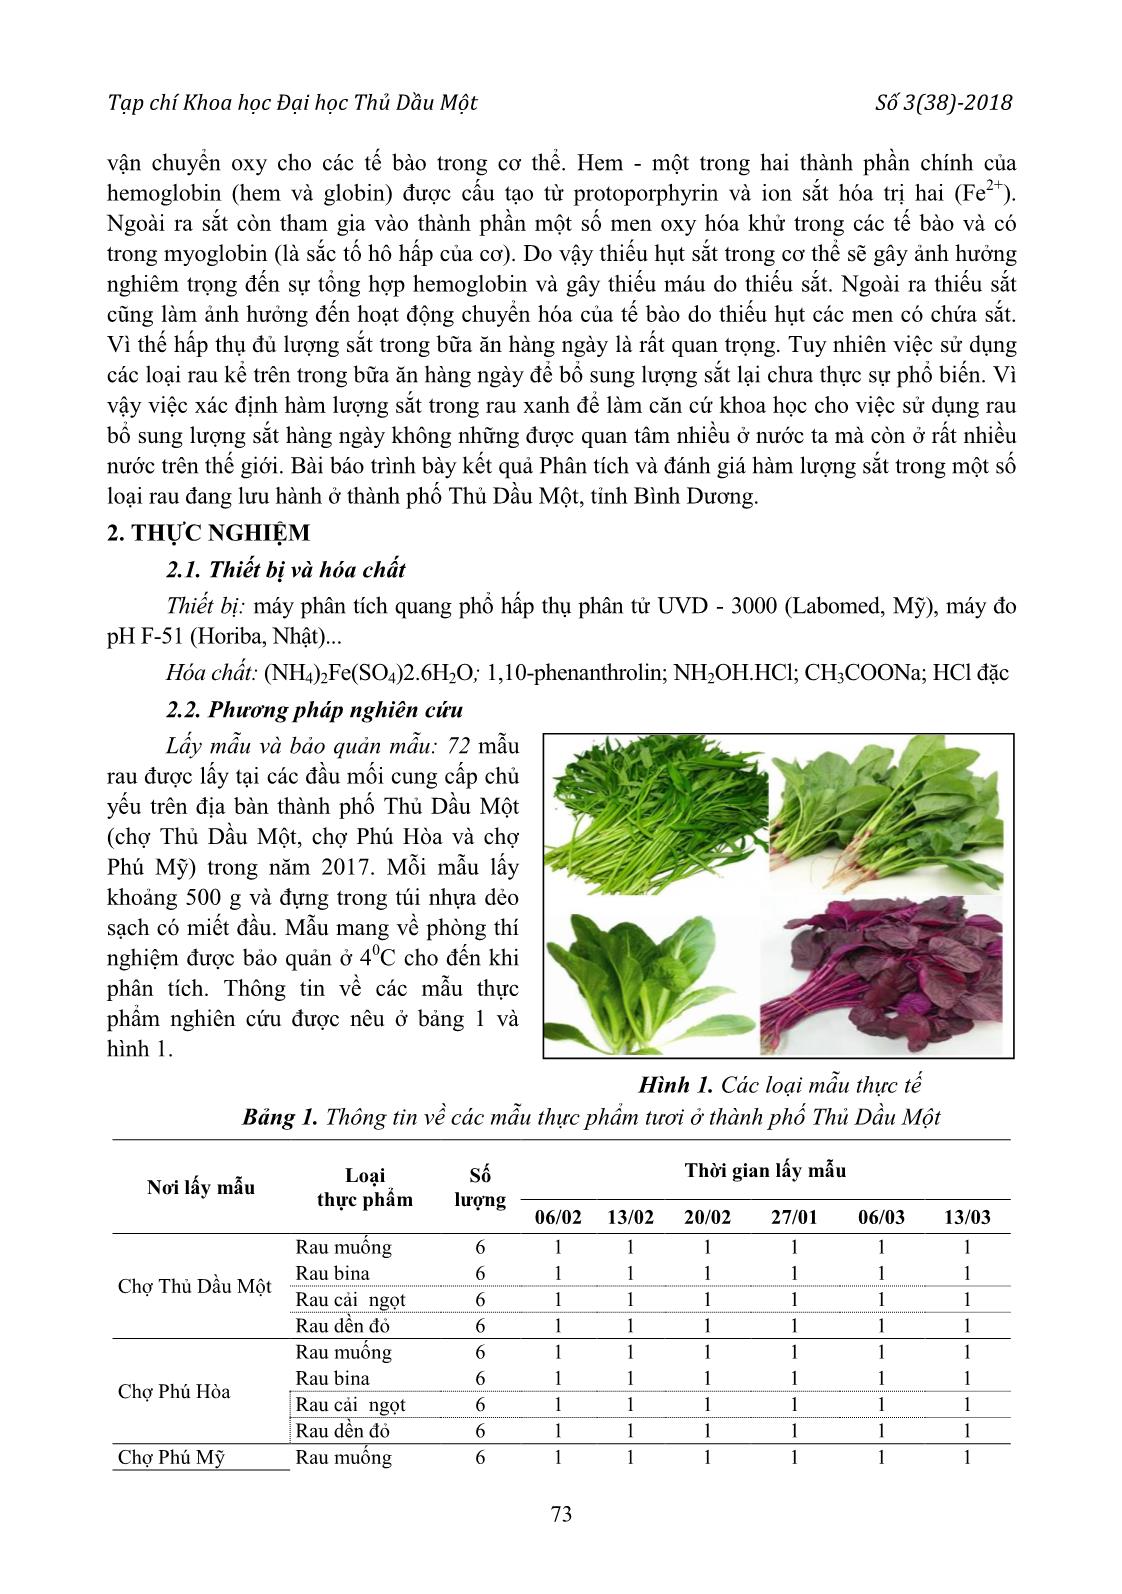 Phân tích và đánh giá hàm lượng sắt trong một số loại rau đang lưu hành ở thành phố Thủ Dầu Một trang 2